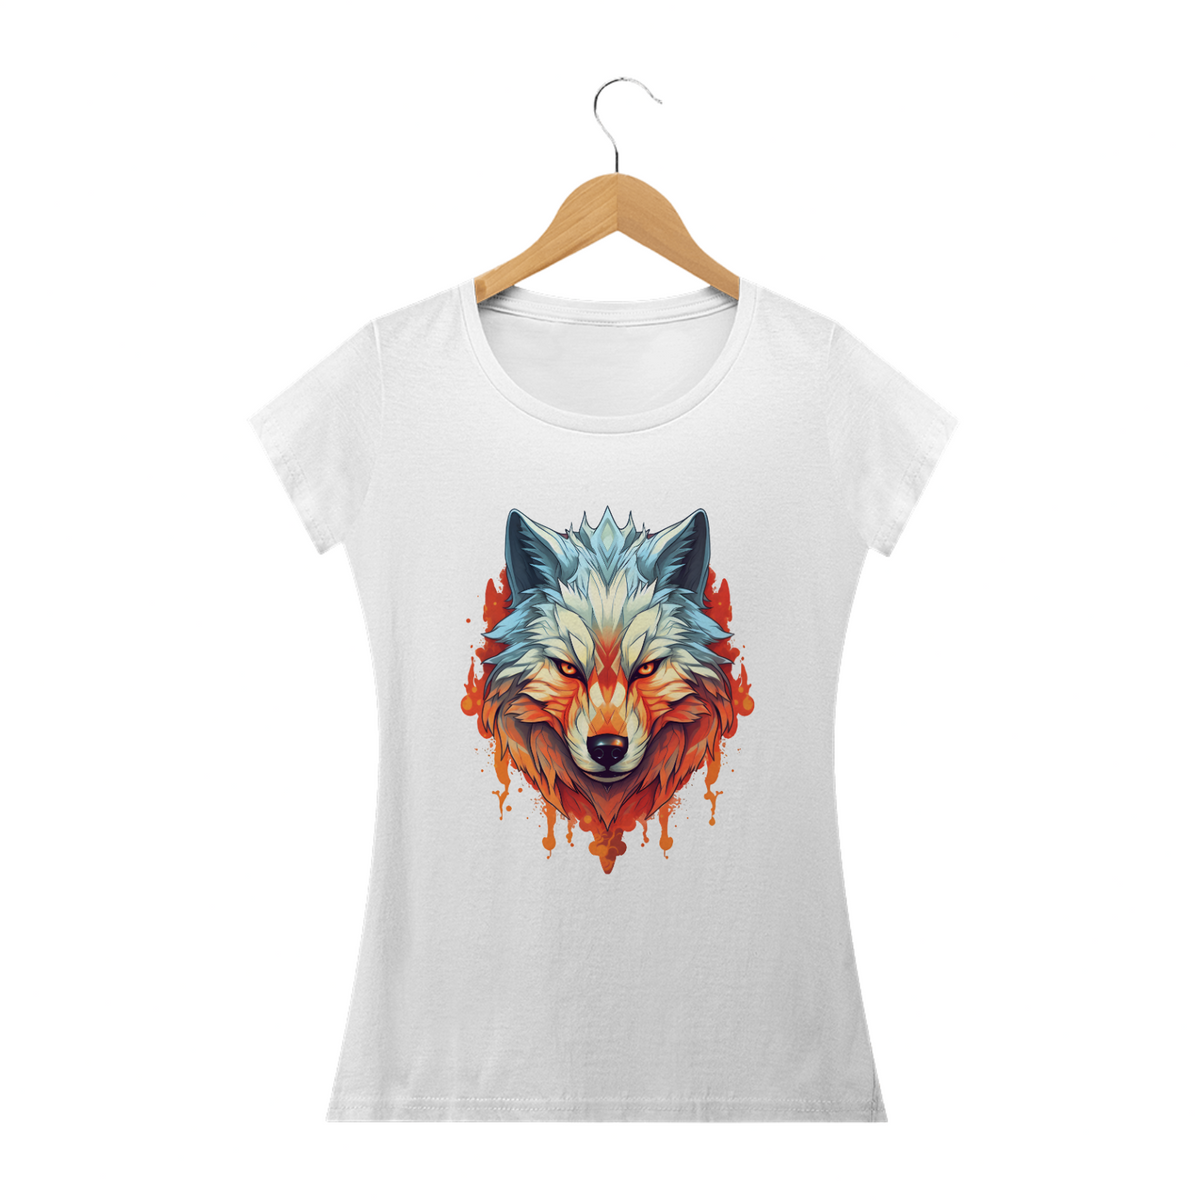 Nome do produto: Camisa Lobo Flamejante (Feminino): Paixão, Energia e Poder em Chamas!